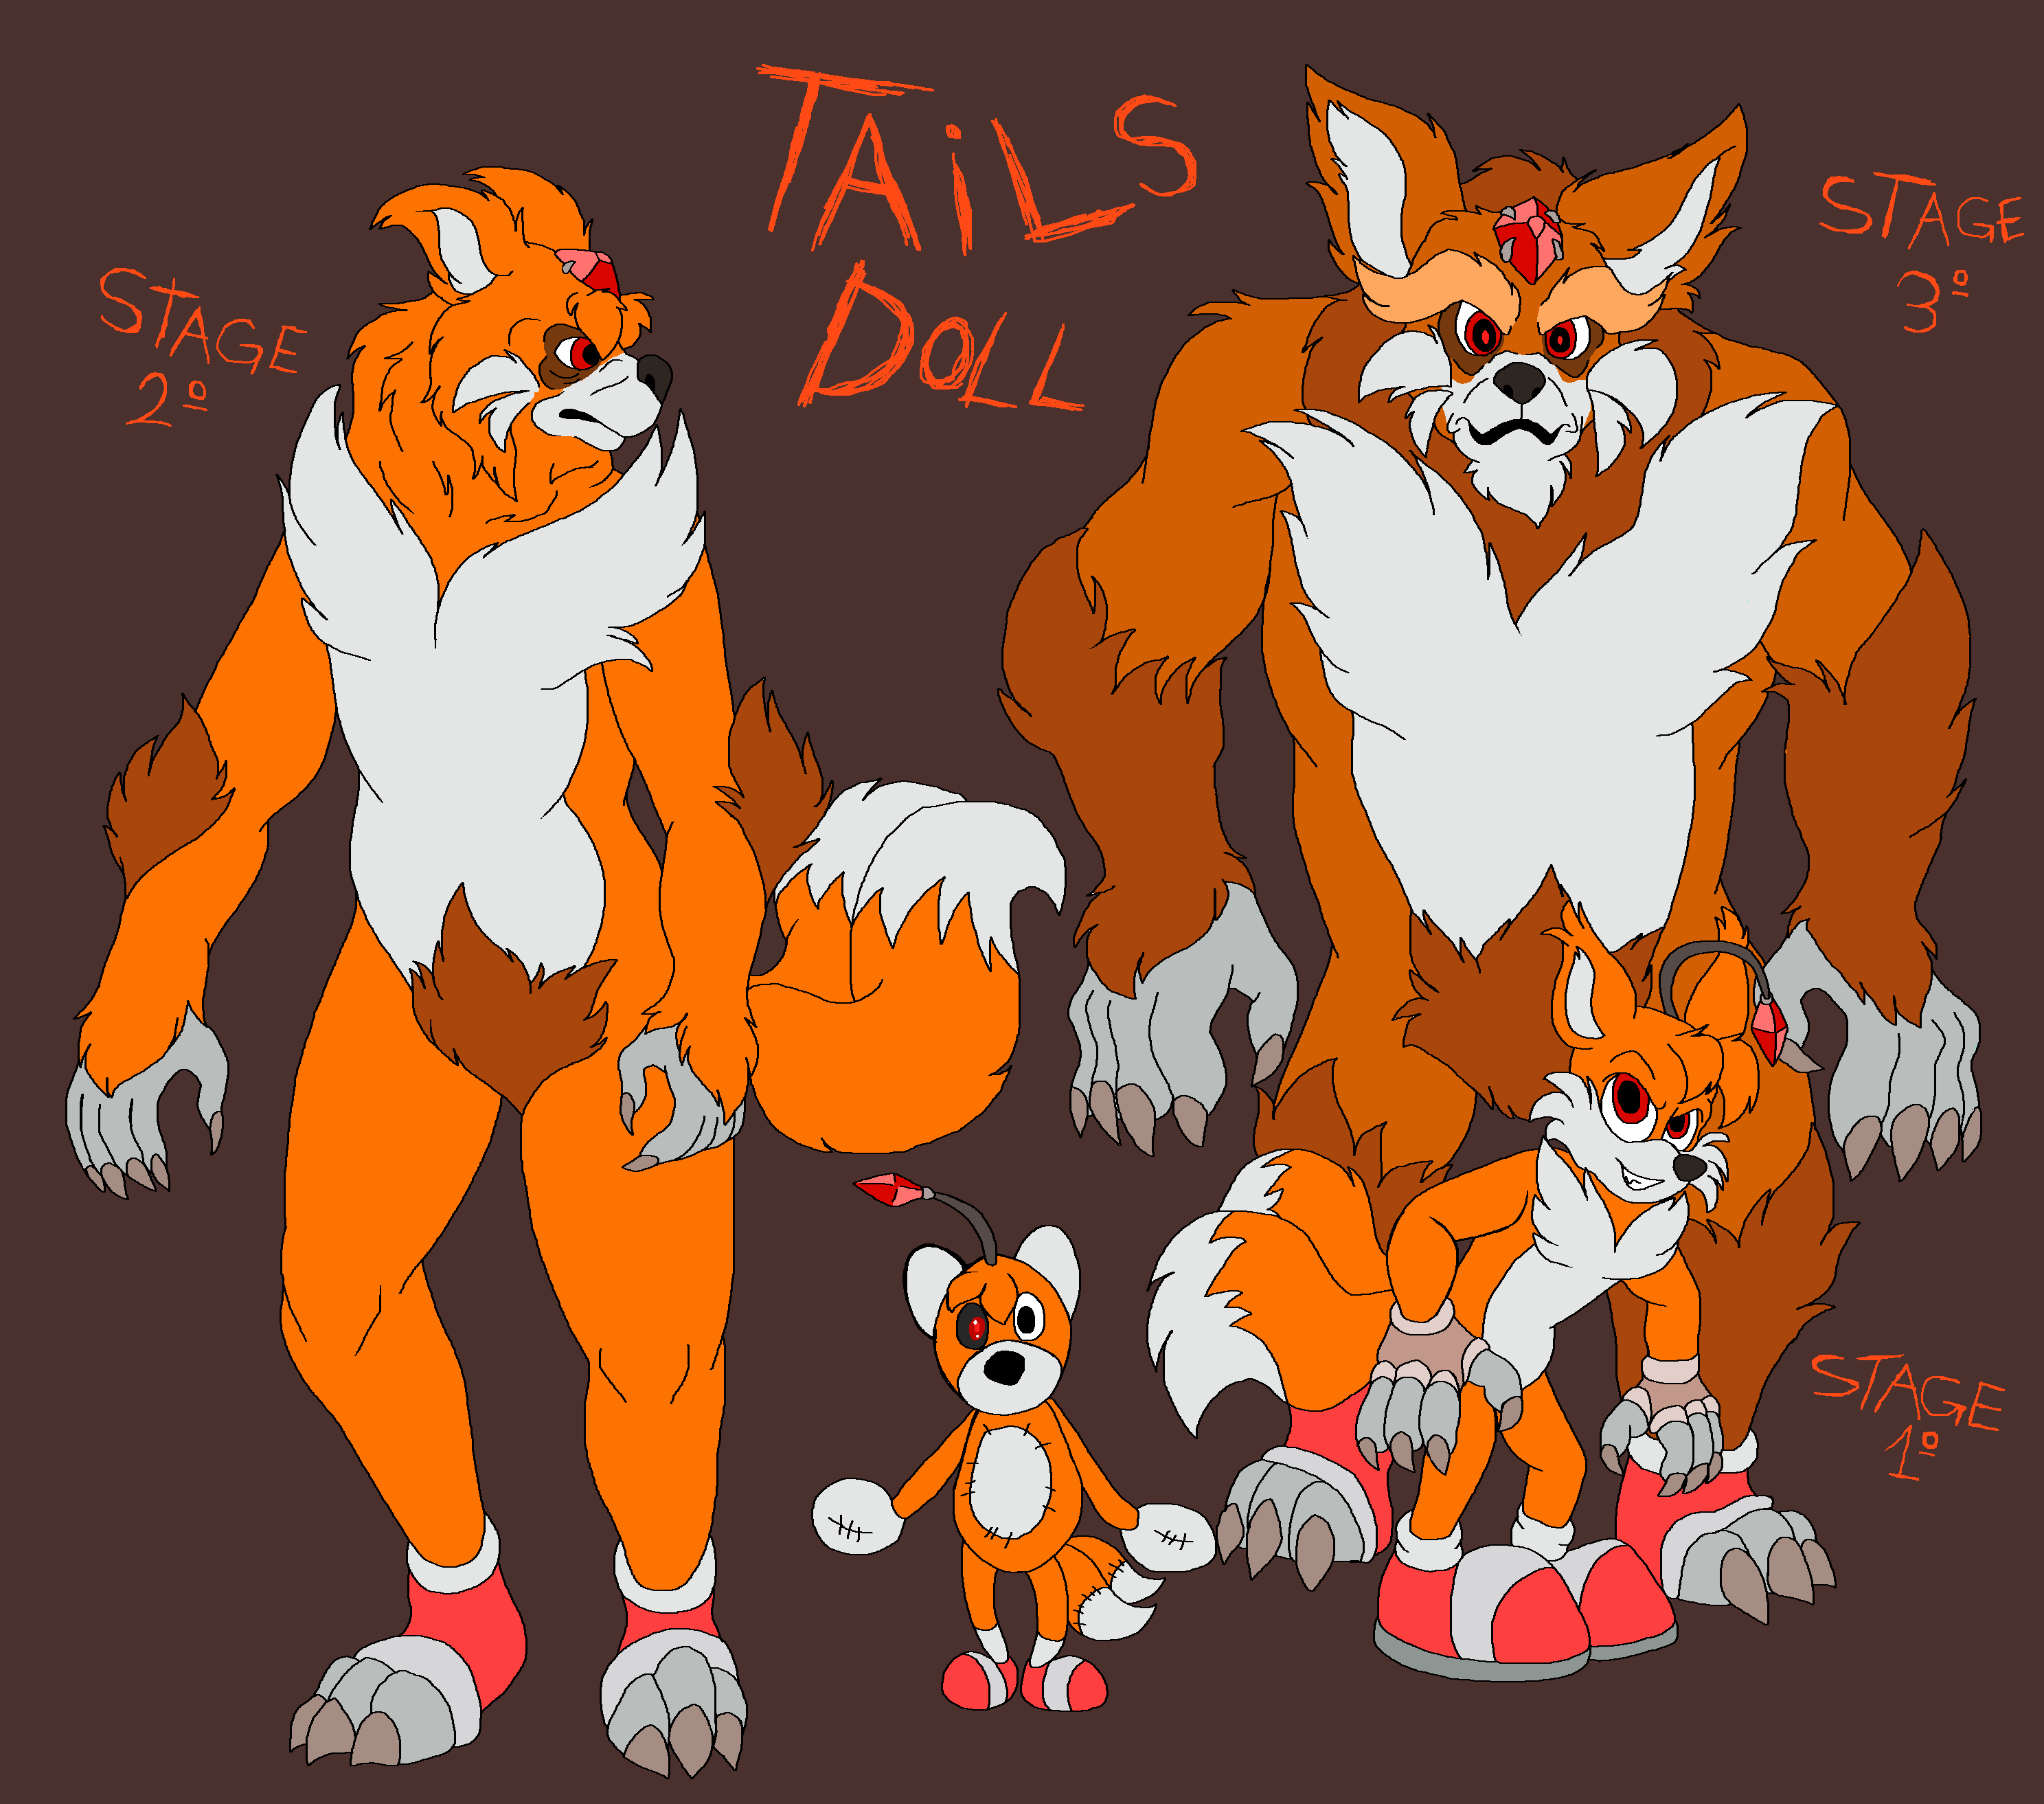 Tails dolls by jayfoxfire on DeviantArt